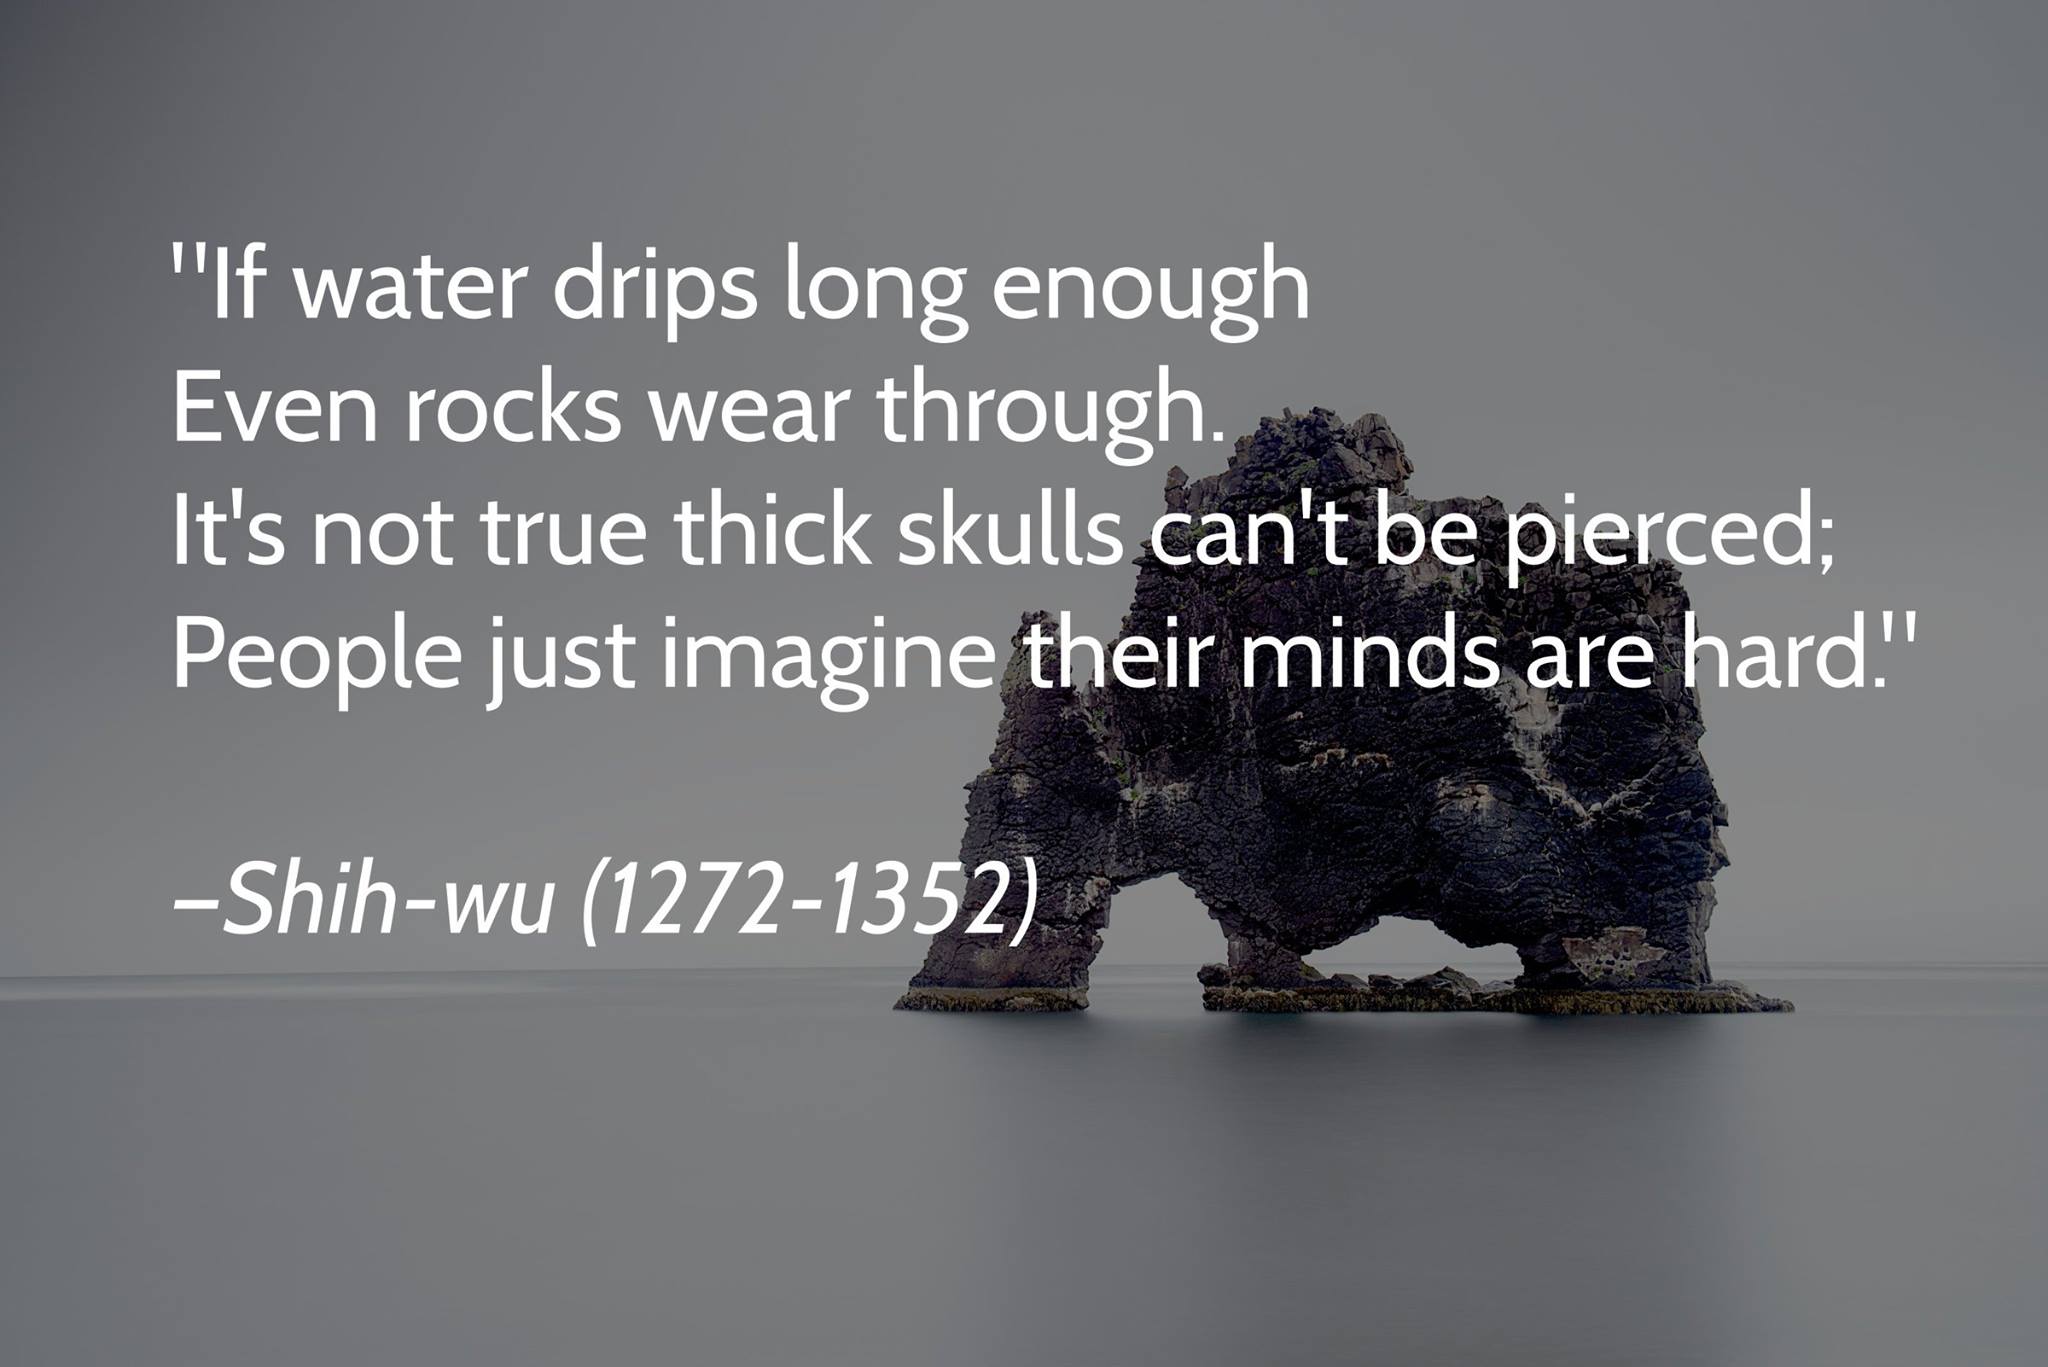 "If water drips long enough, even rocks wear through." -Shih Wu